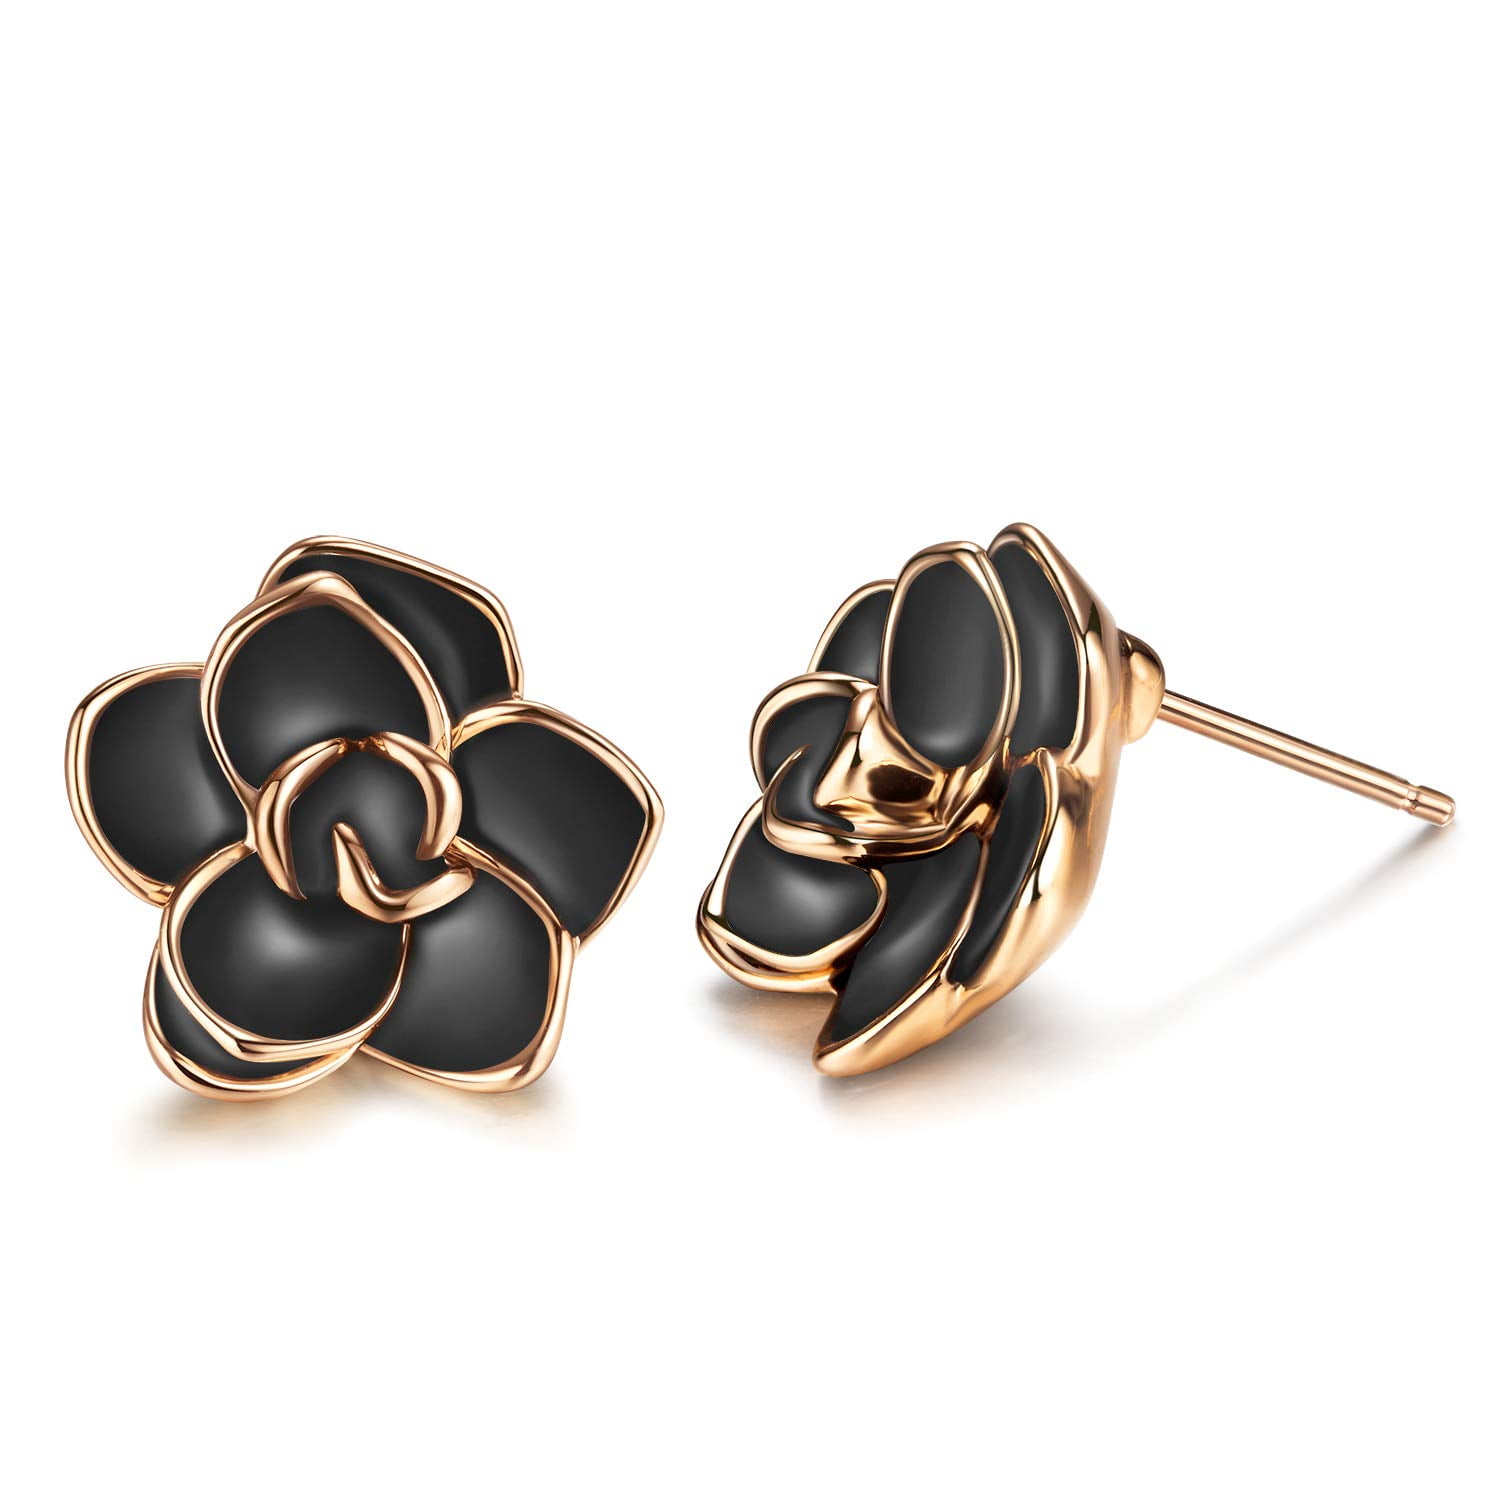 18K Rose Gold Plated Sterling Silver Post Elegant Black Rose Flower Stud Earrings for Women Girls Sensitive Ears